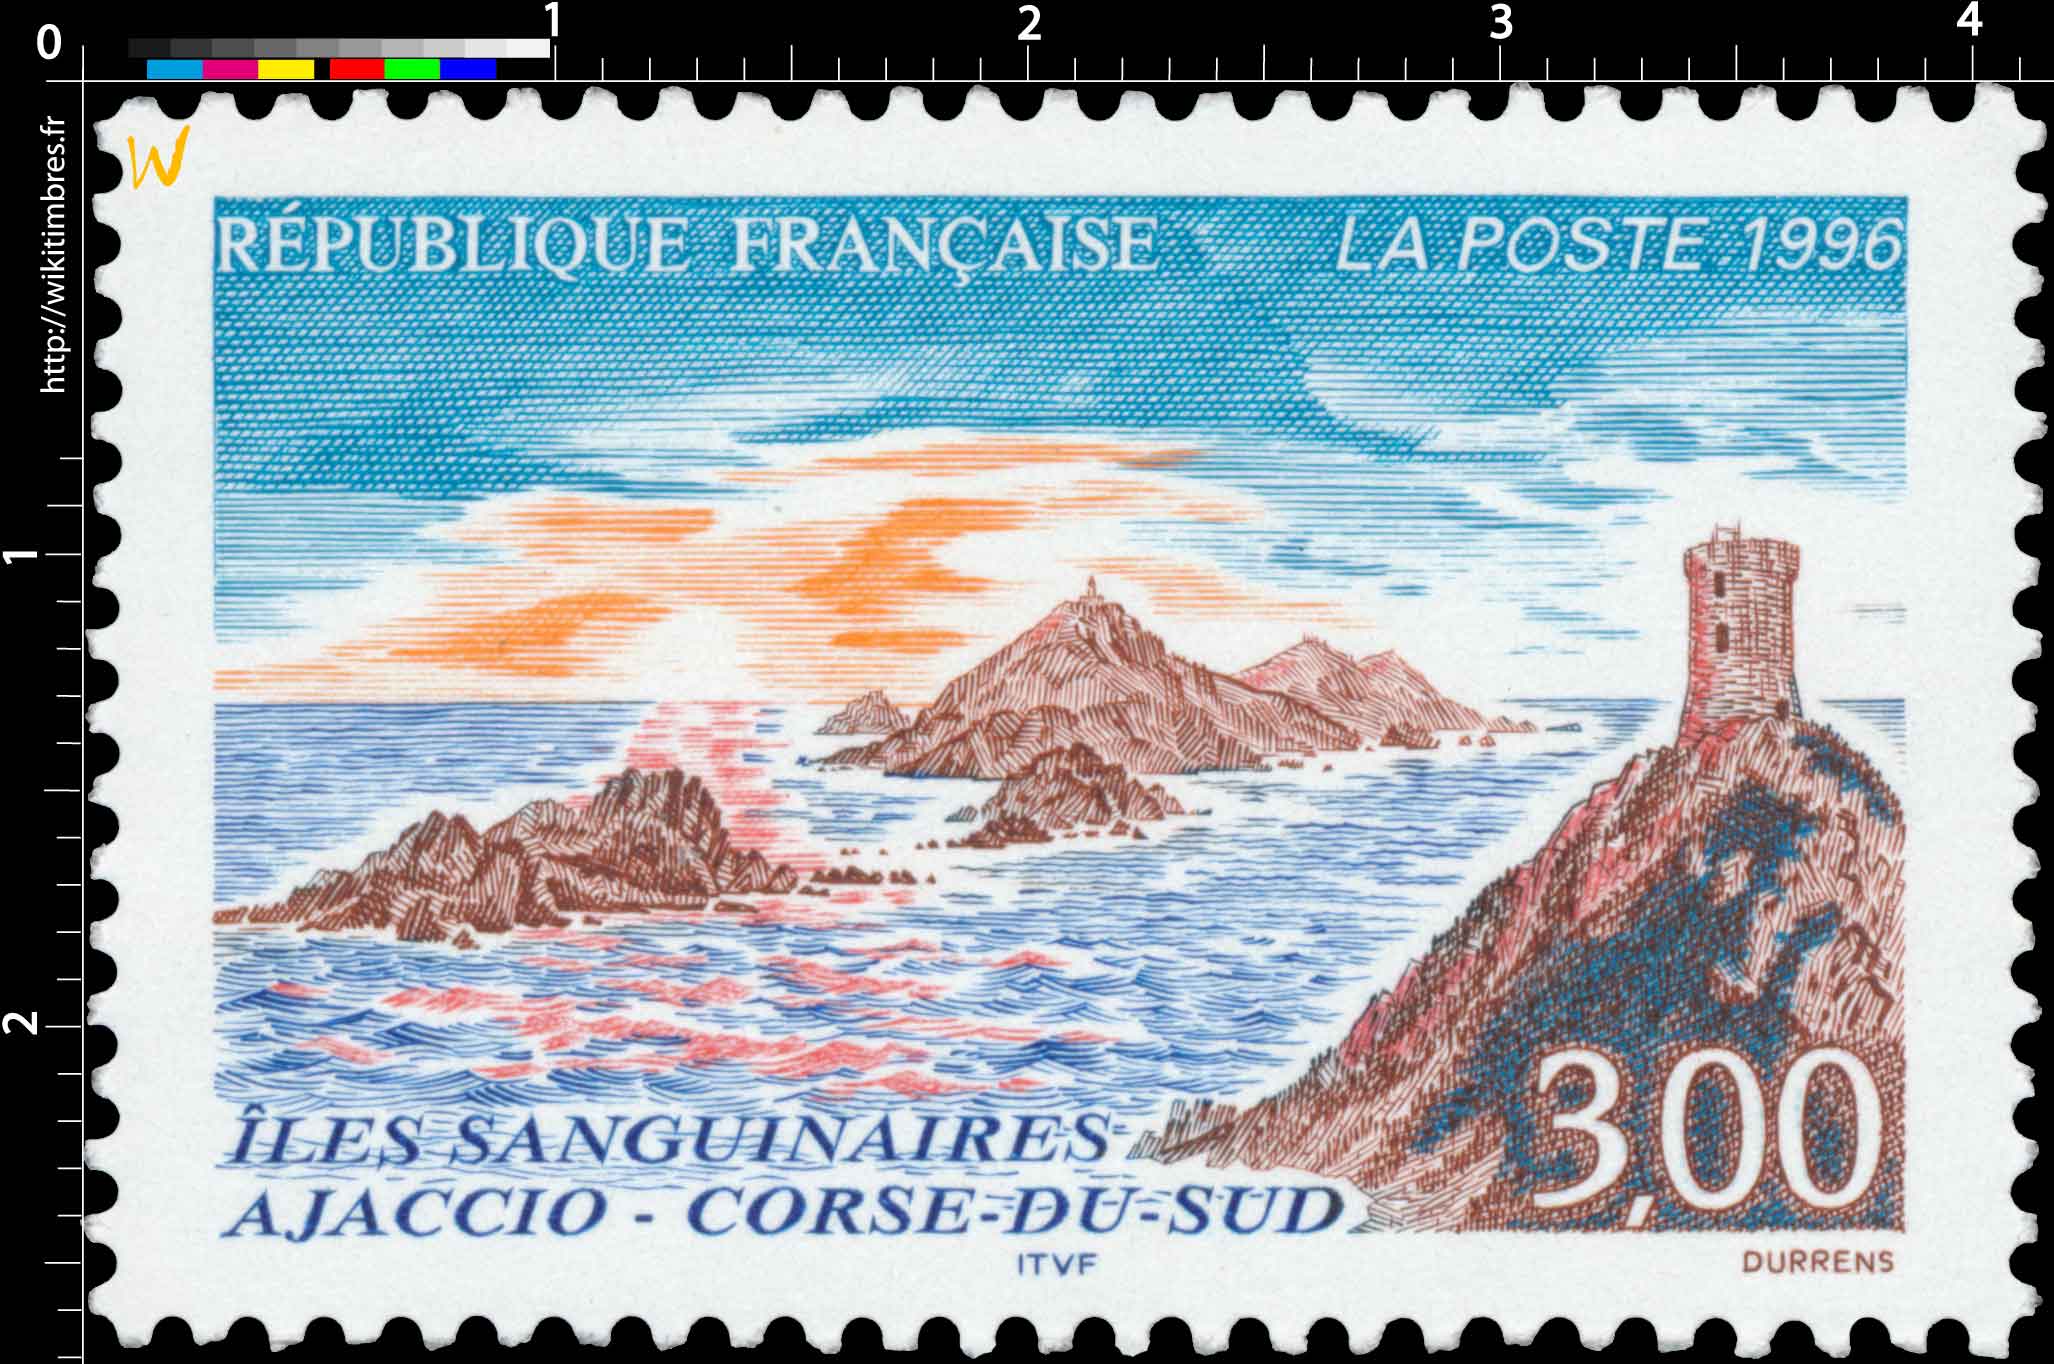 1996 ÎLES SANGUINAIRES AJACCIO - CORSE-DU-SUD